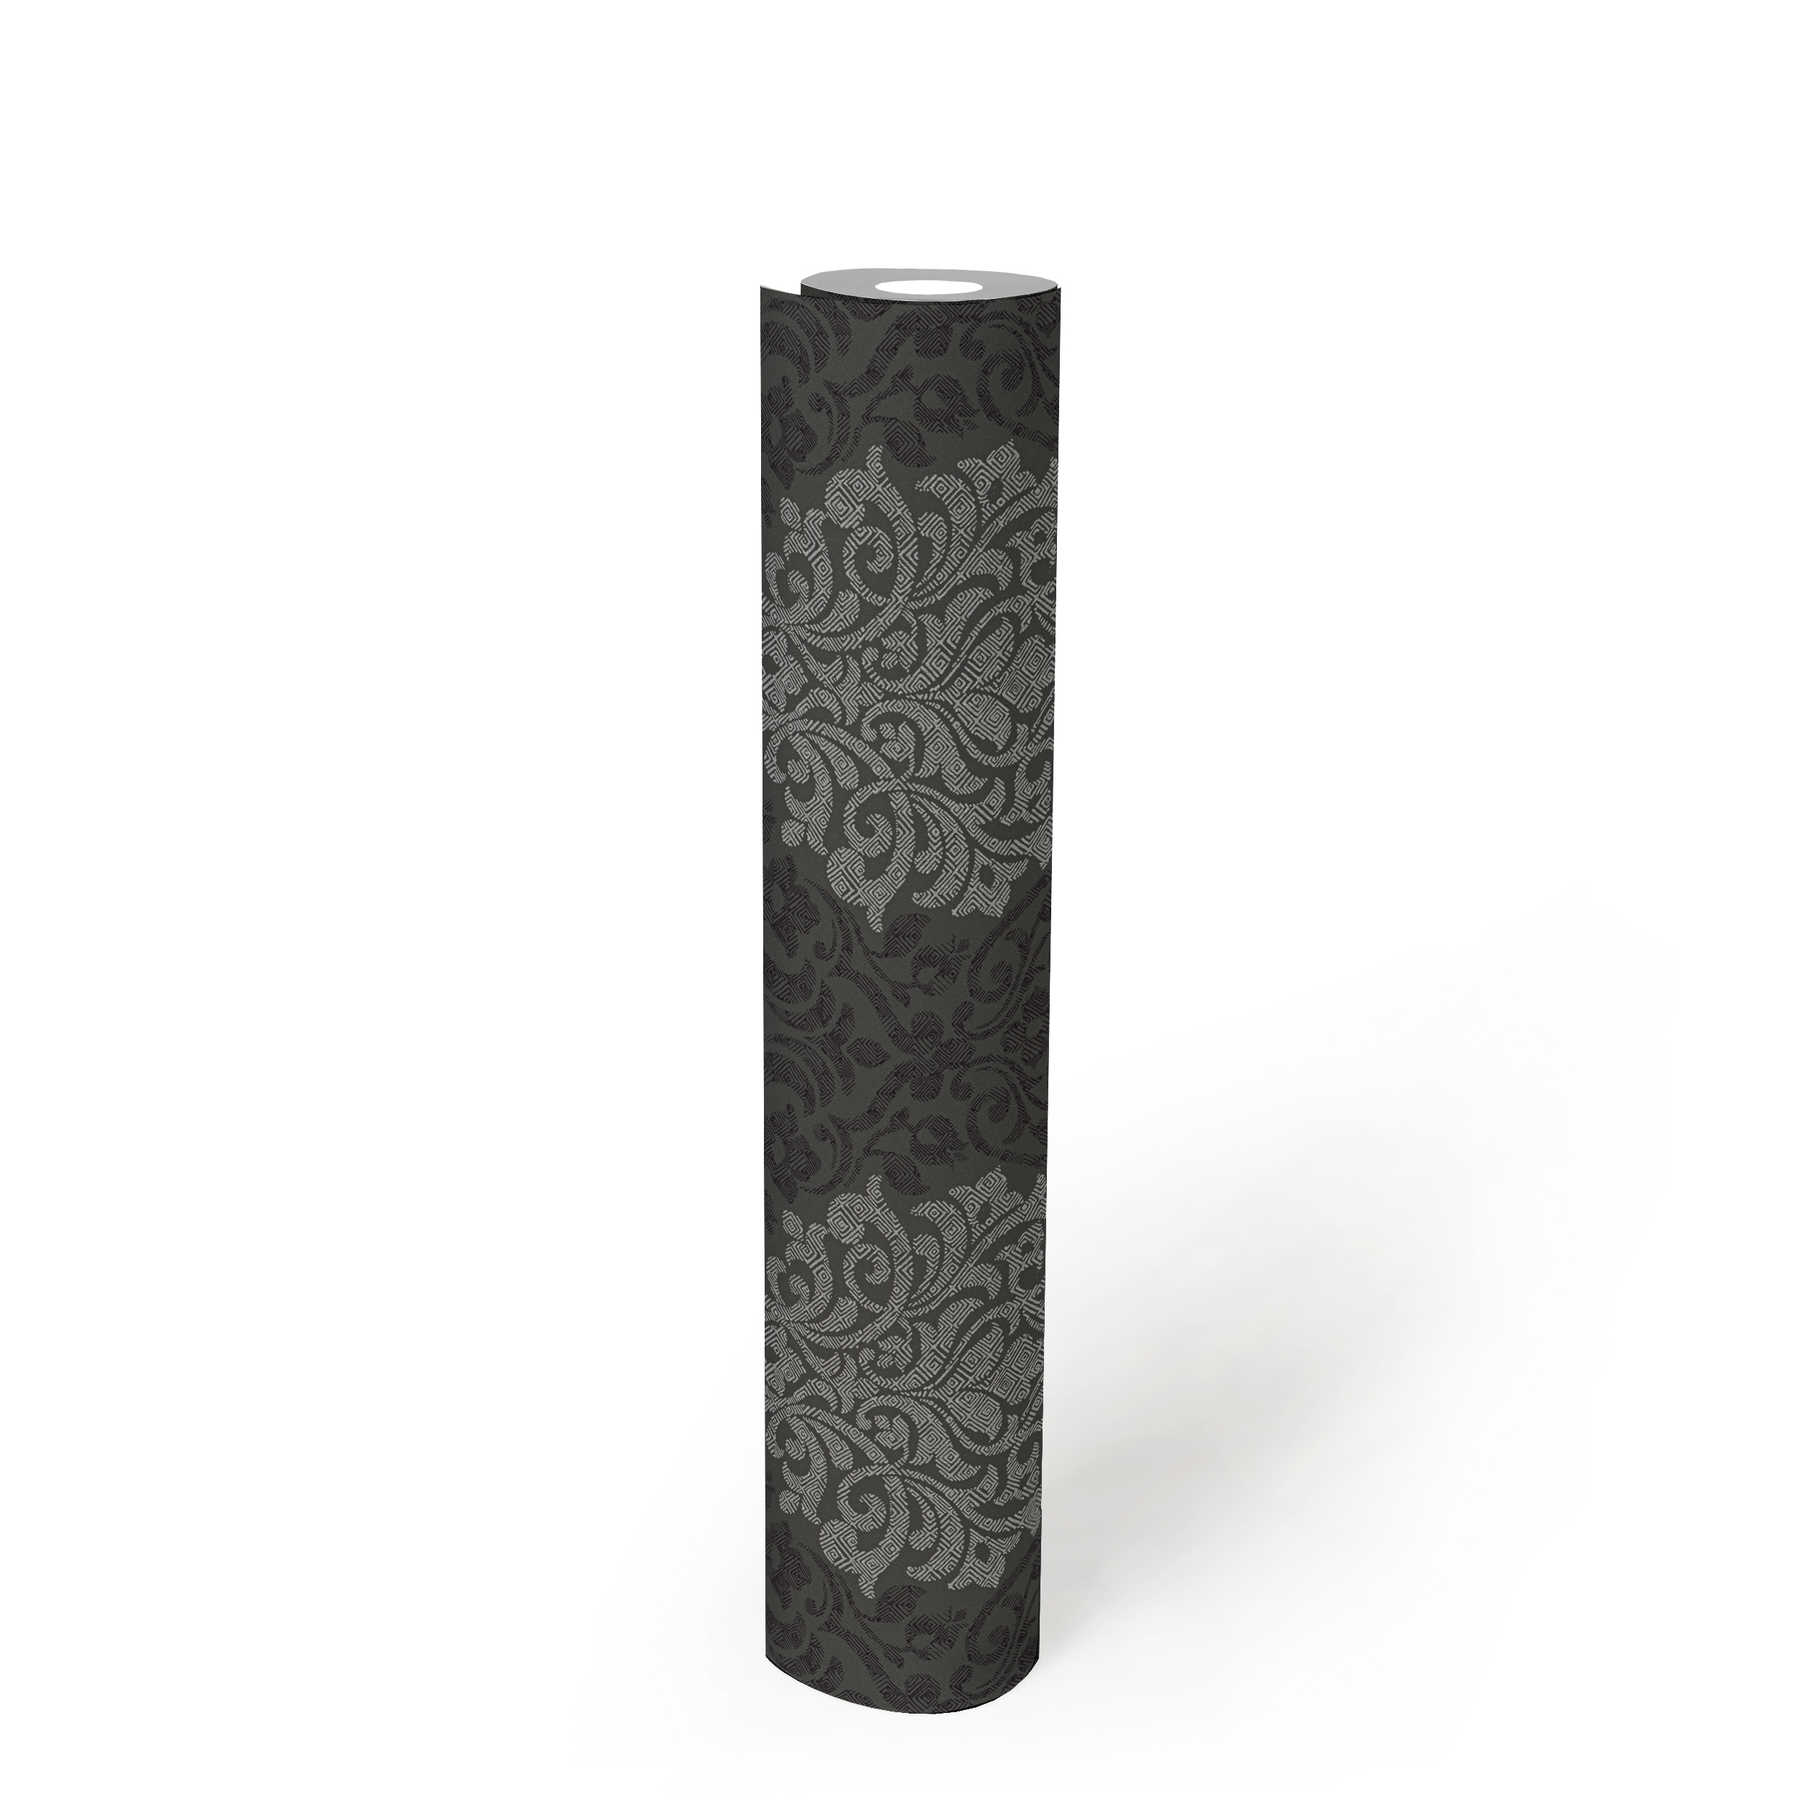             Floraal sierbehang ruitpatroon in ethno stijl - zilver, zwart, grijs
        